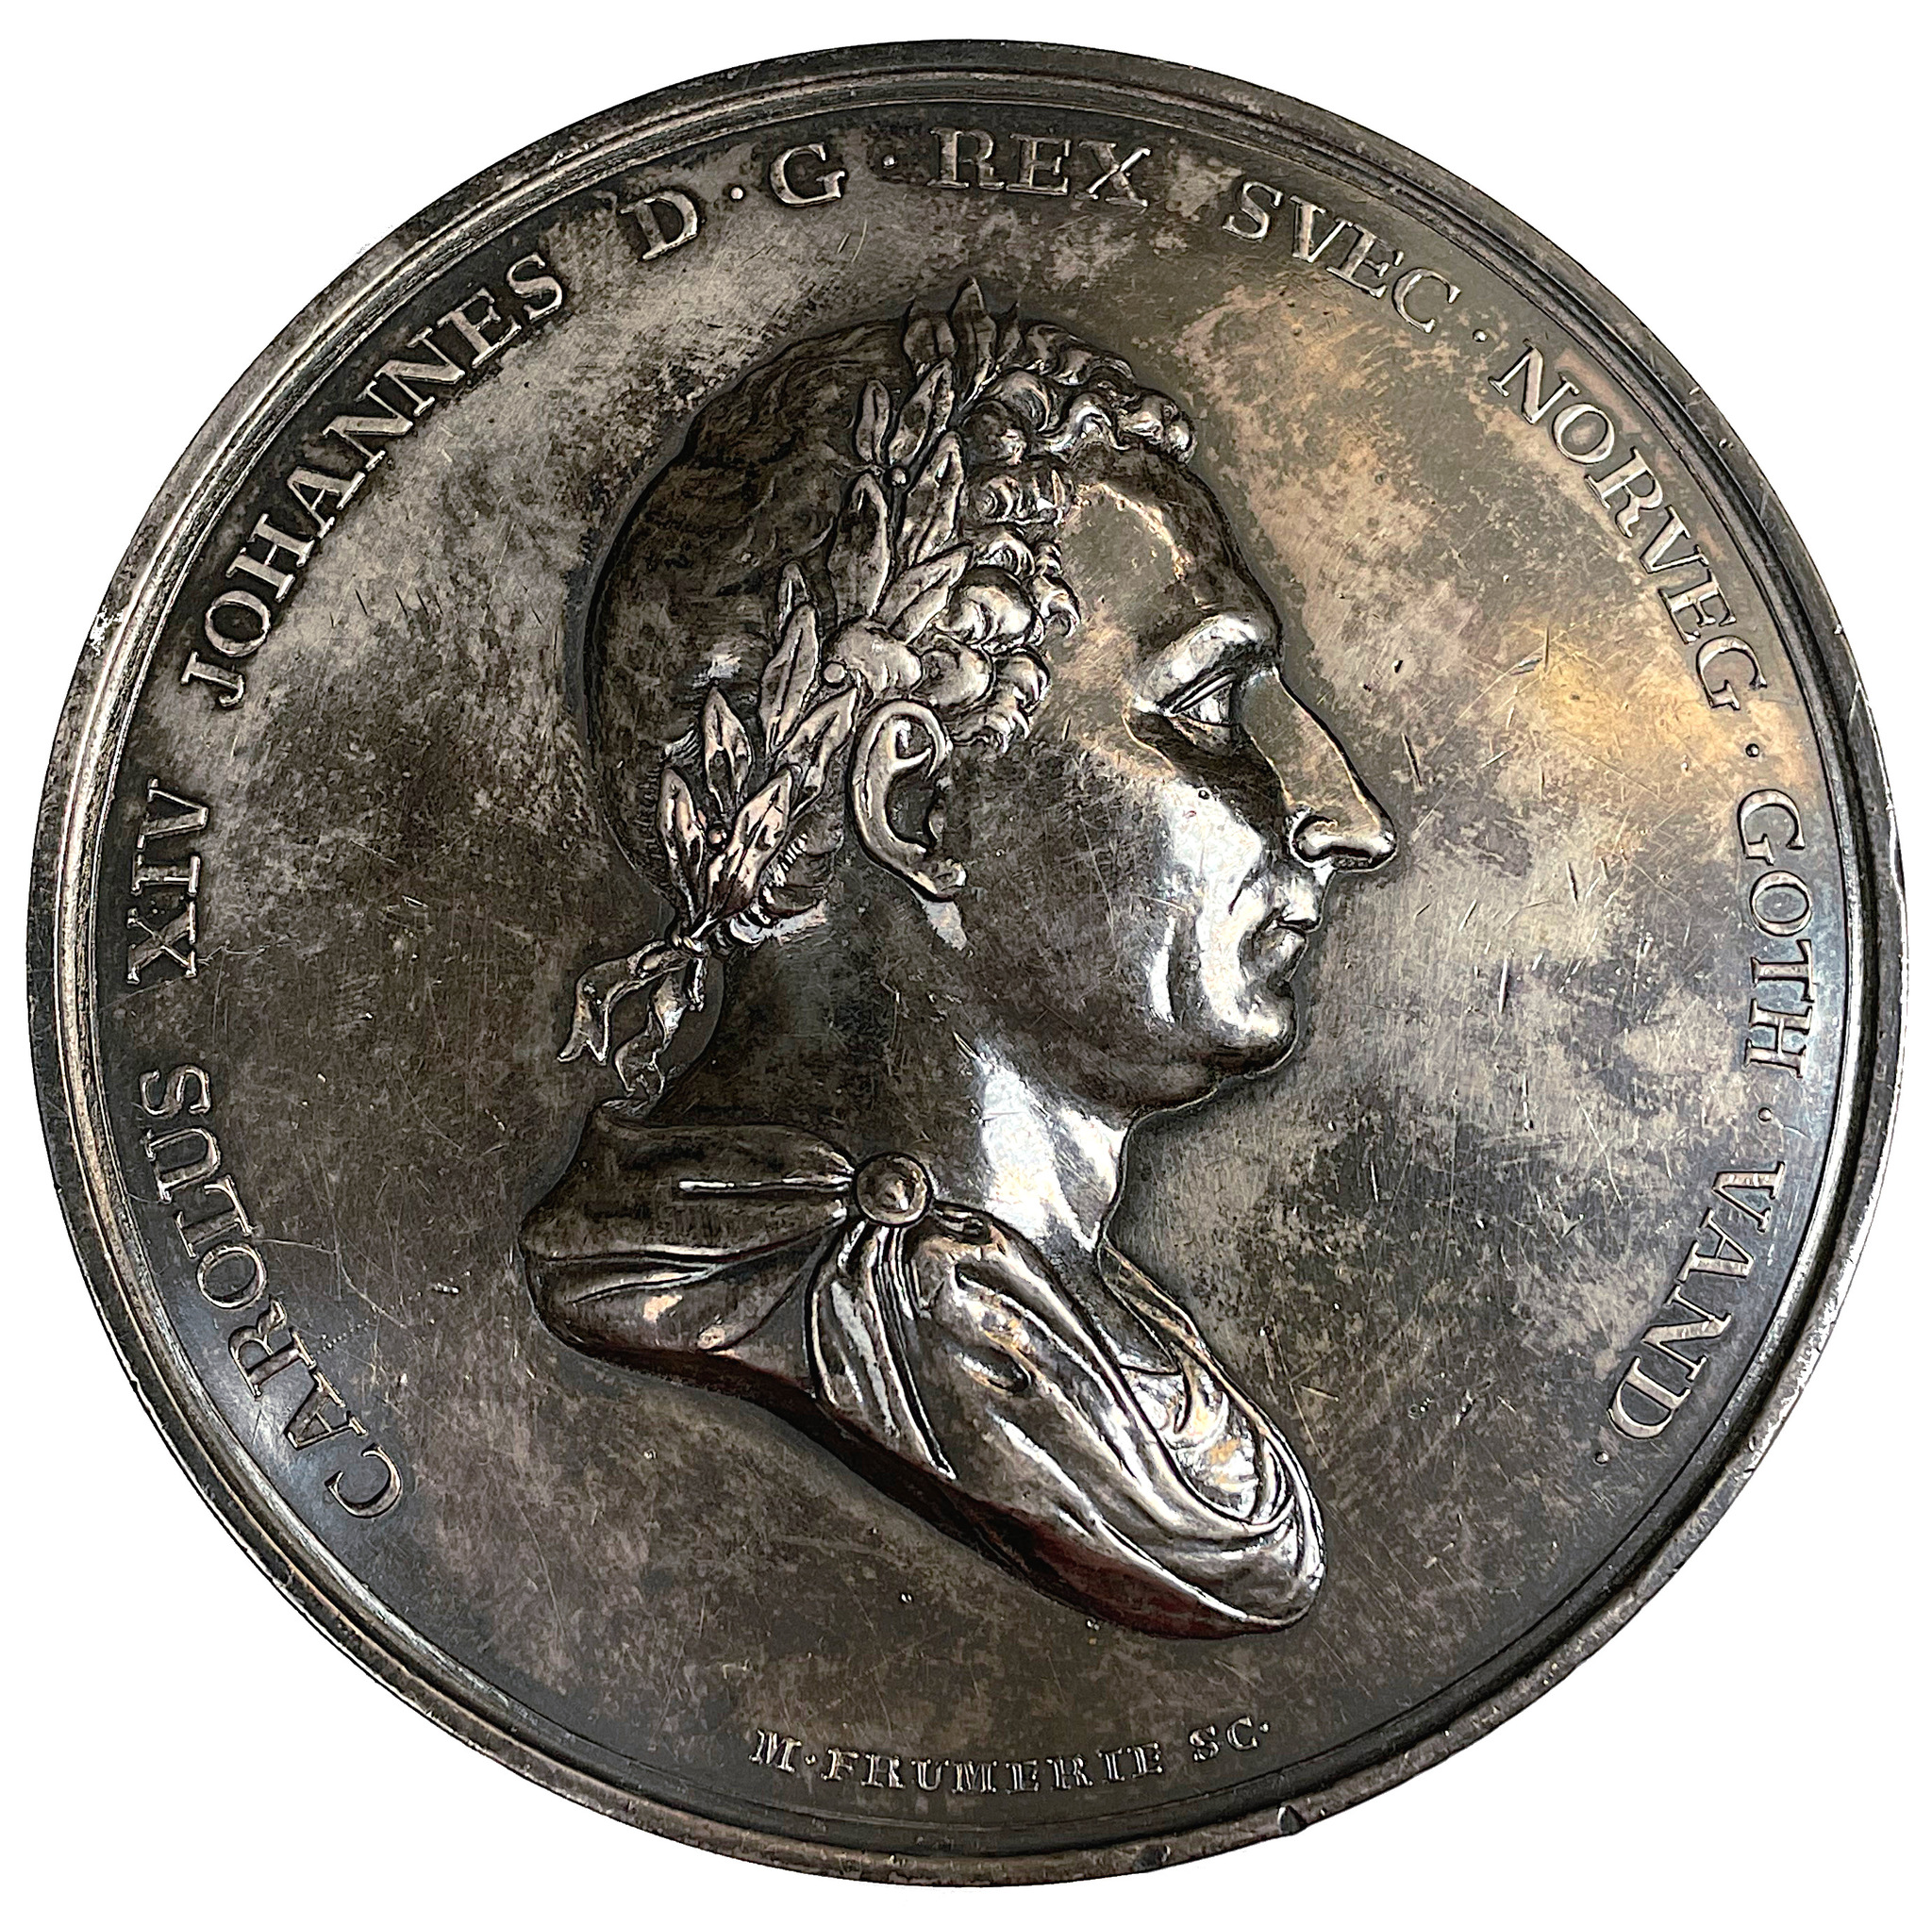 Karl XIV Johan, Konungens 25-åriga regeringsjubileum den 5 feb 1843 av Mauritz Frumerie - Massiv silvermedalj - Mycket sällsynt RR